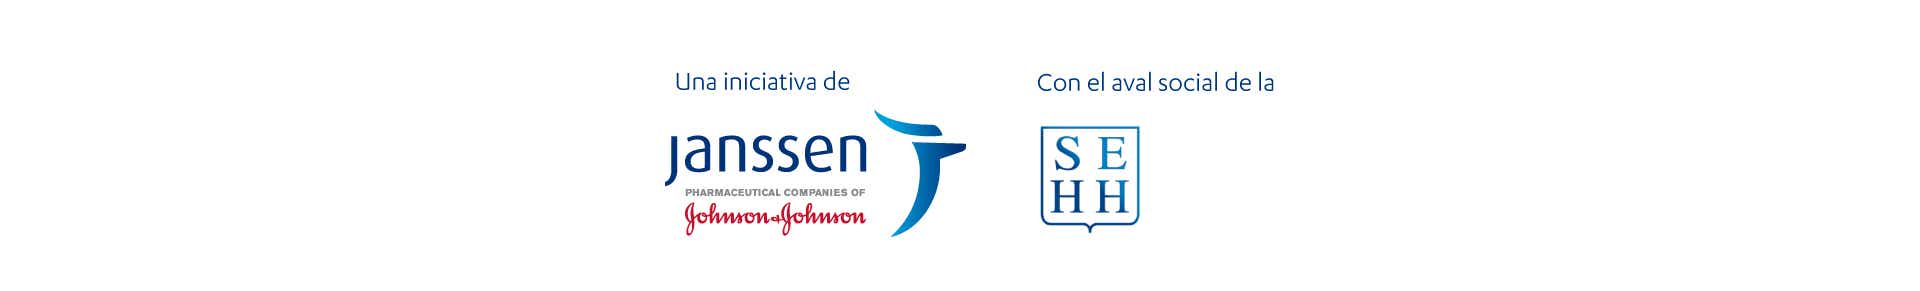 Logos de Janssen y Seehh